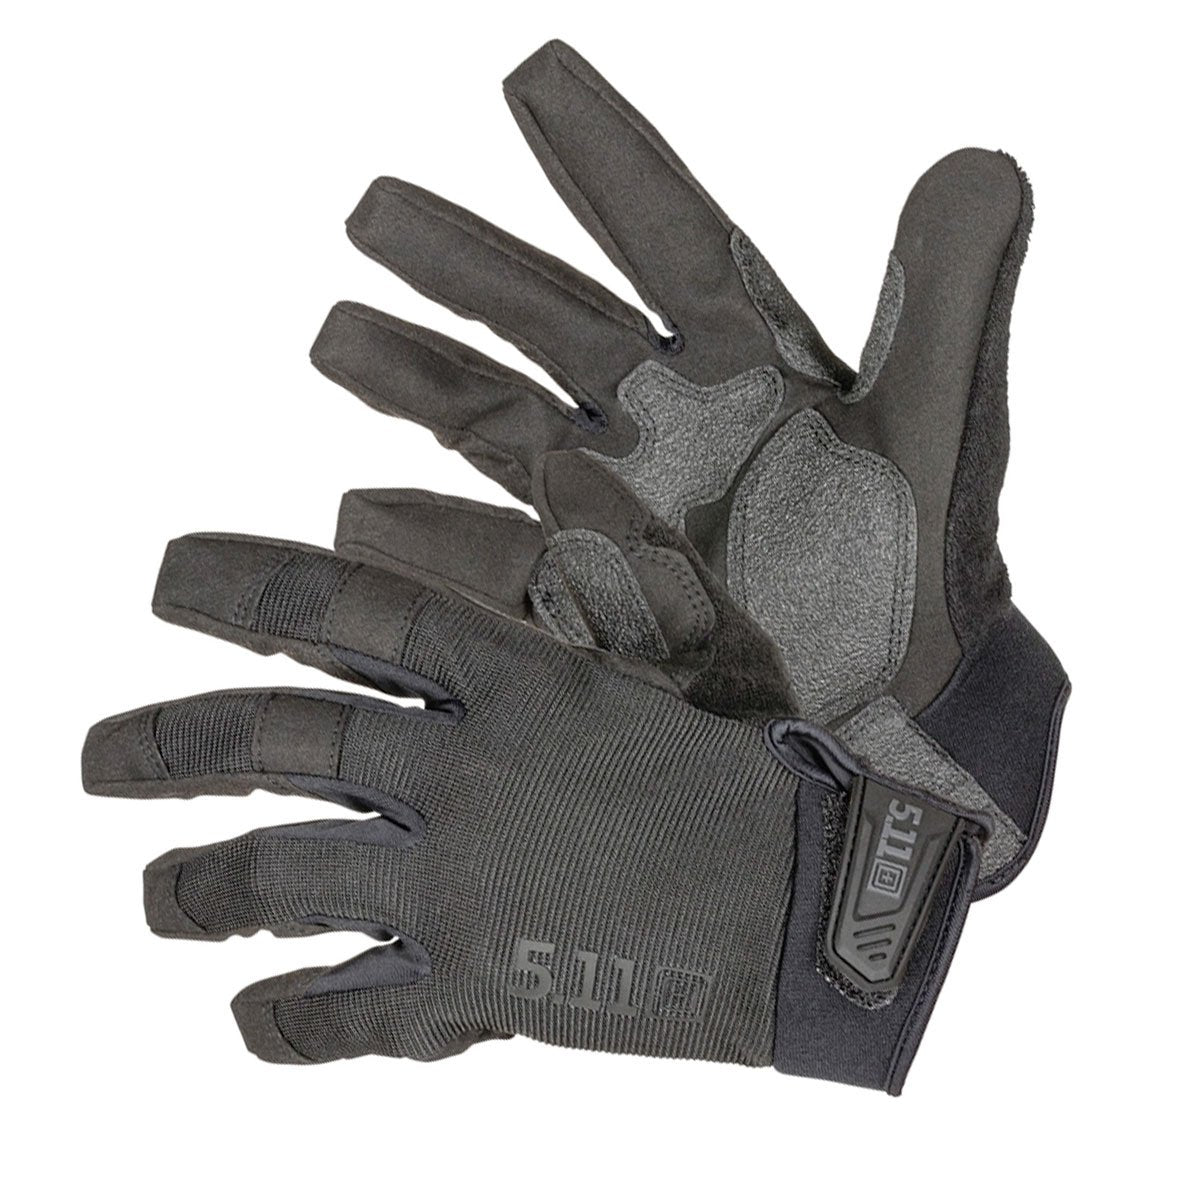 5.11 Tactical TAC A3 Glove Black | Tactical Gear Australia Tactical Gear